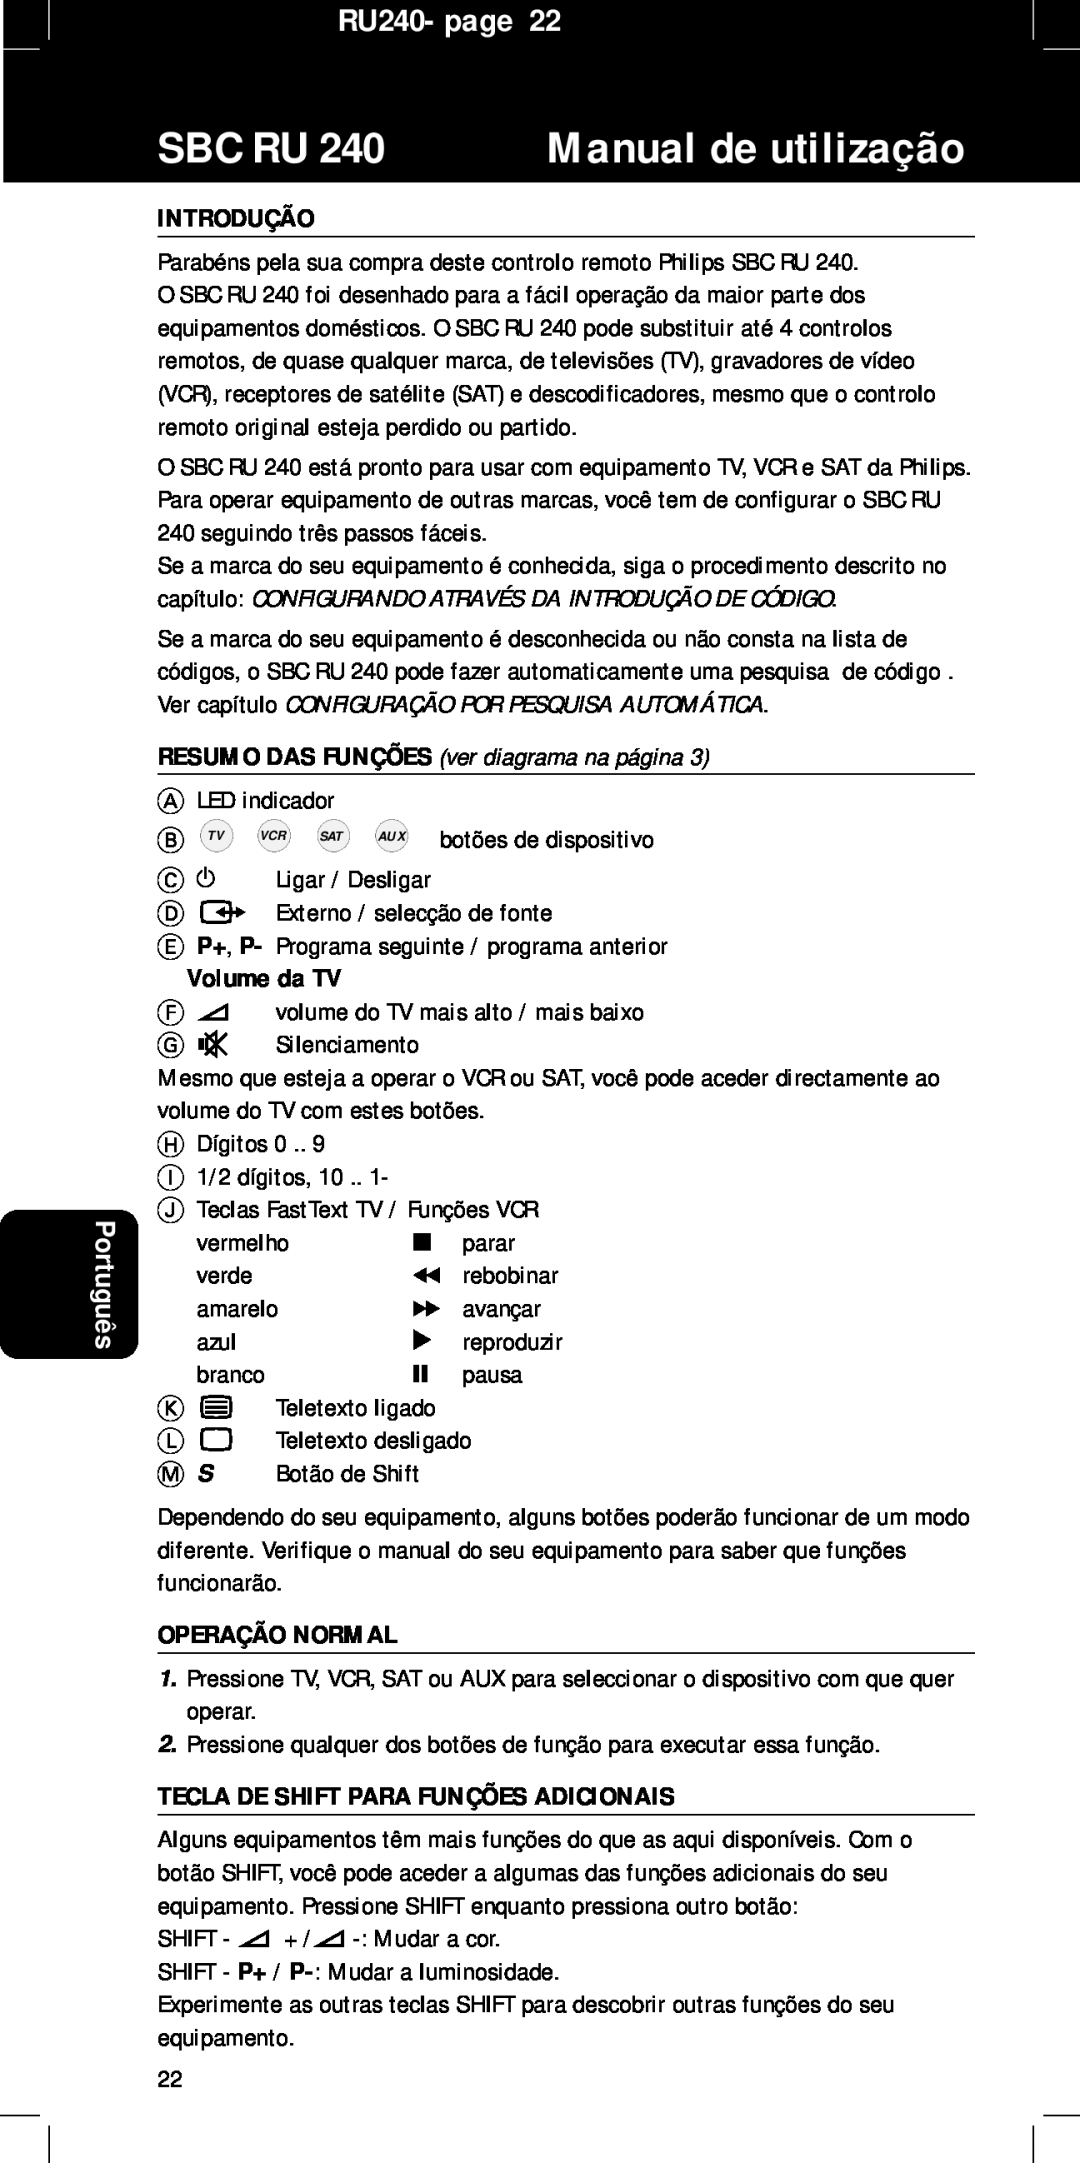 Philips RU240 Manual de utilização, Português, Introdução, RESUMO DAS FUNÇÕES ver diagrama na página, Volume da TV, Sbc Ru 